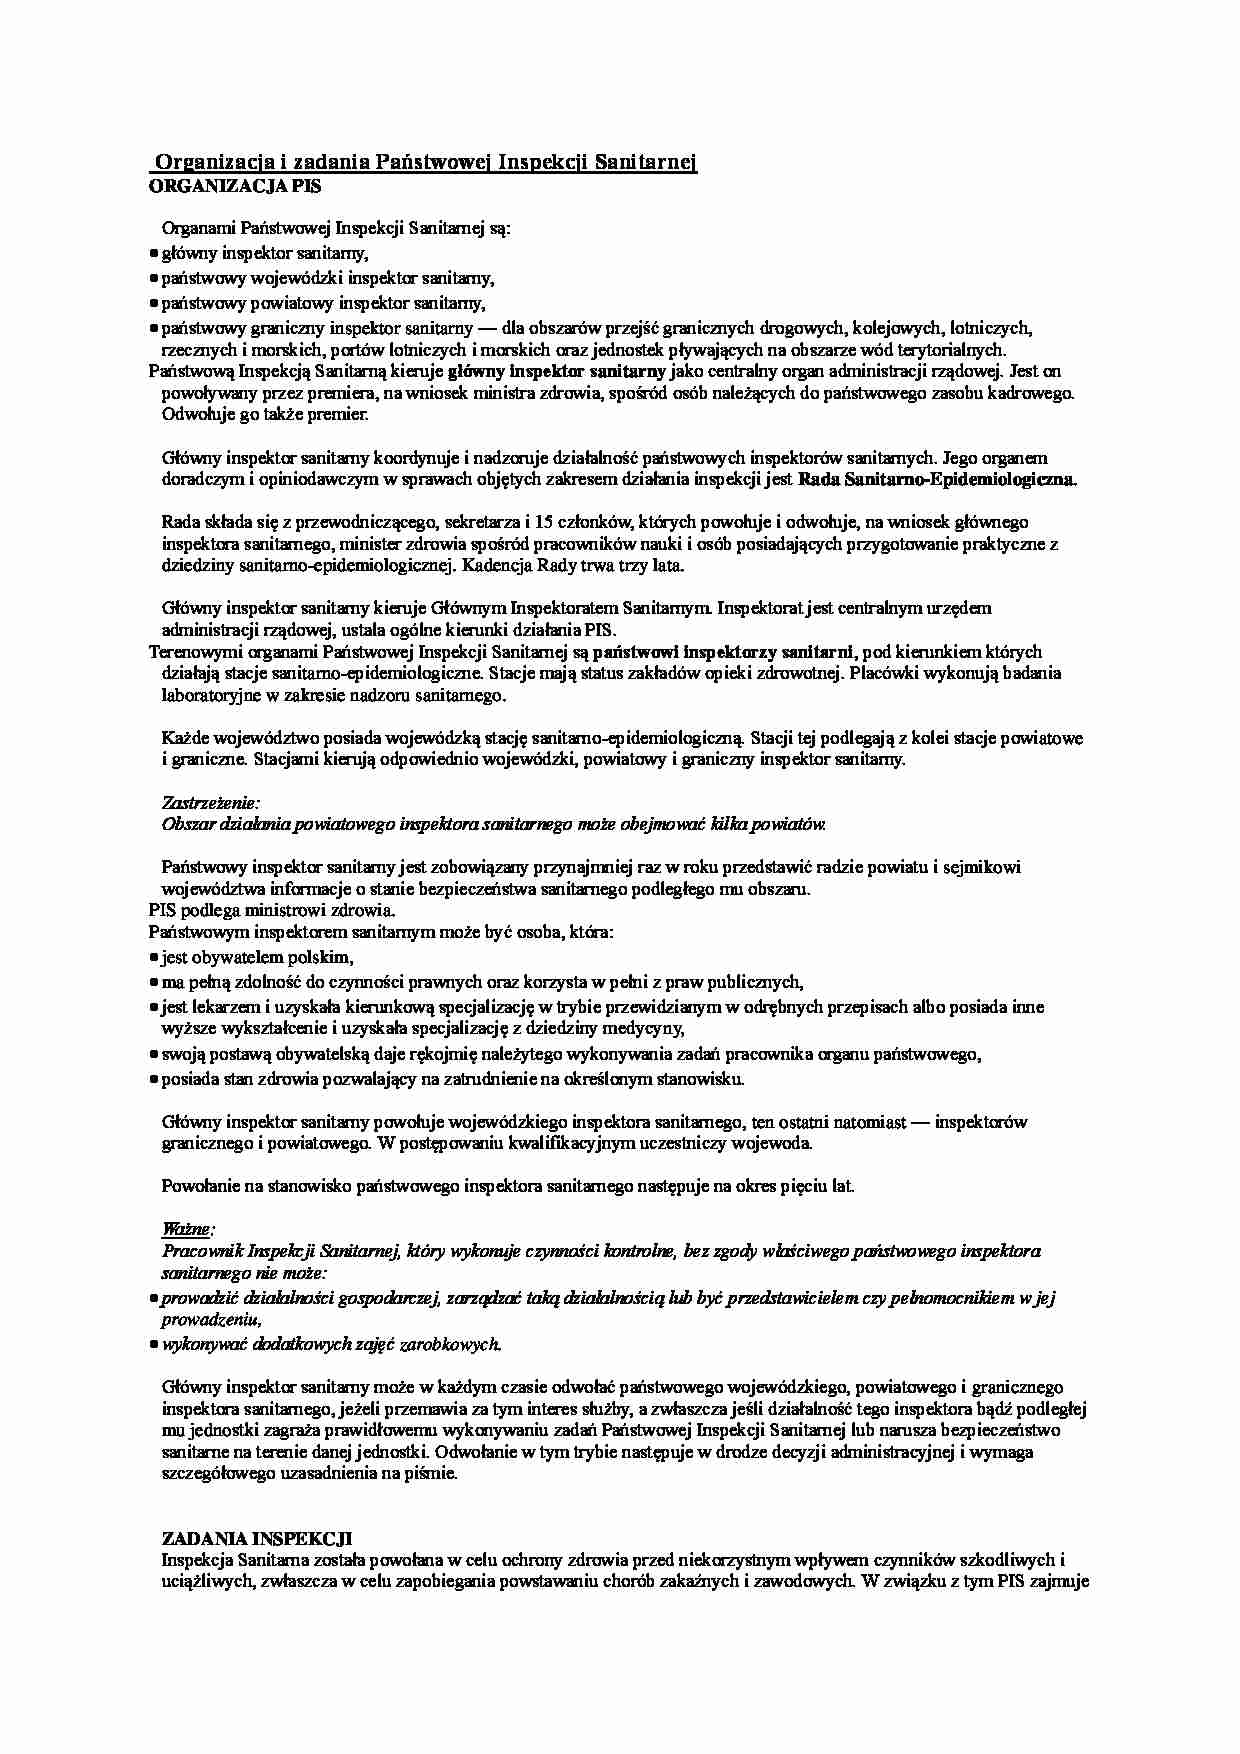 Organizacja i zadania PIS  - omówienie (sem.II) - strona 1